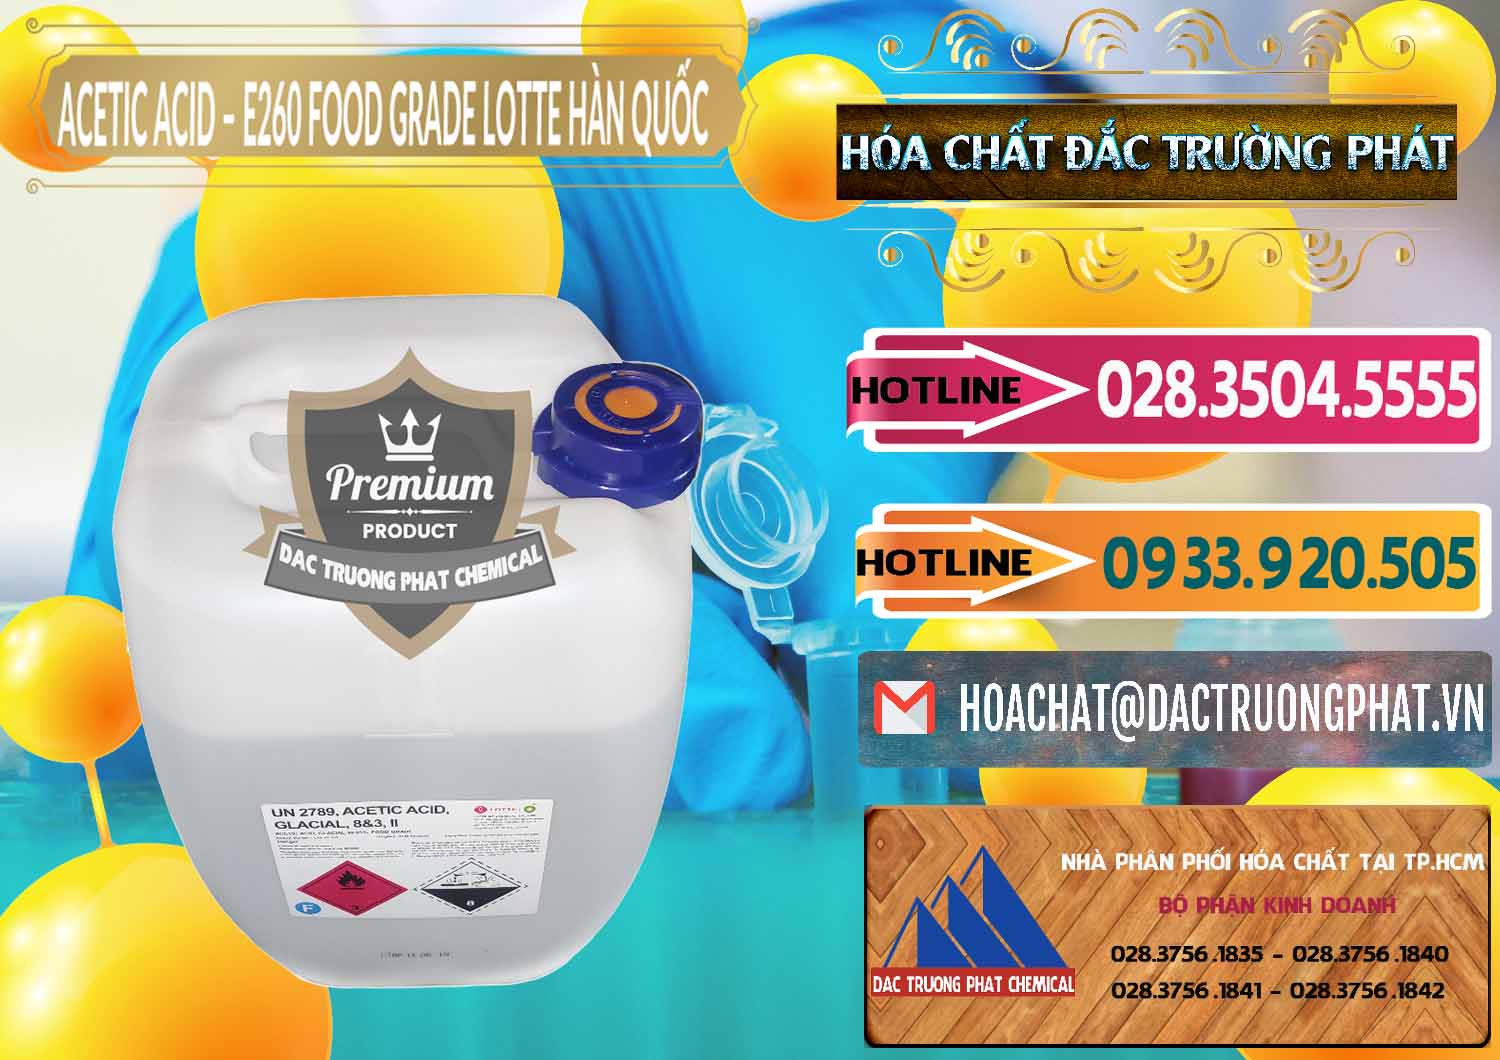 Đơn vị chuyên phân phối ( bán ) Acetic Acid – Axit Acetic E260 Food Grade Hàn Quốc Lotte Korea - 0003 - Chuyên cung cấp - kinh doanh hóa chất tại TP.HCM - dactruongphat.vn